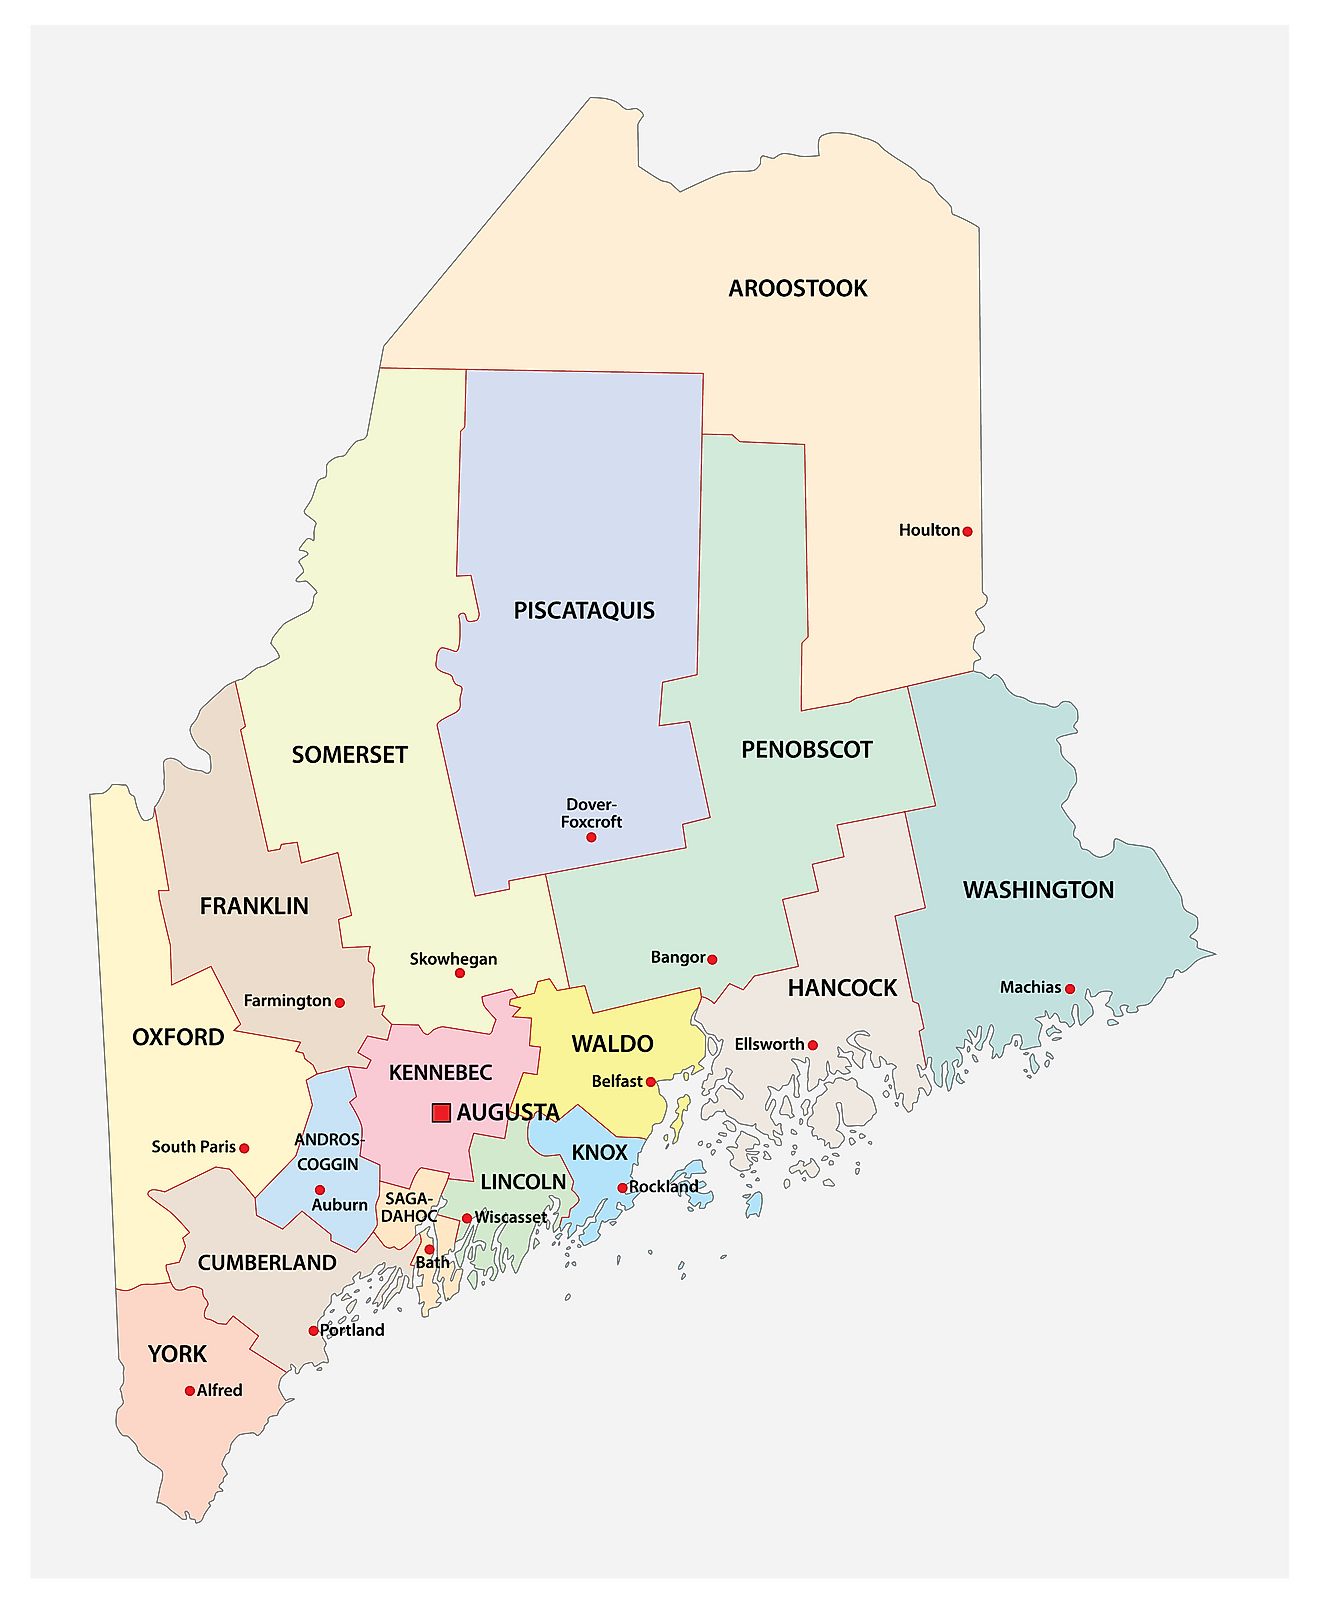 Mapa administrativo de Maine que muestra sus 16 condados y la ciudad capital - Augusta